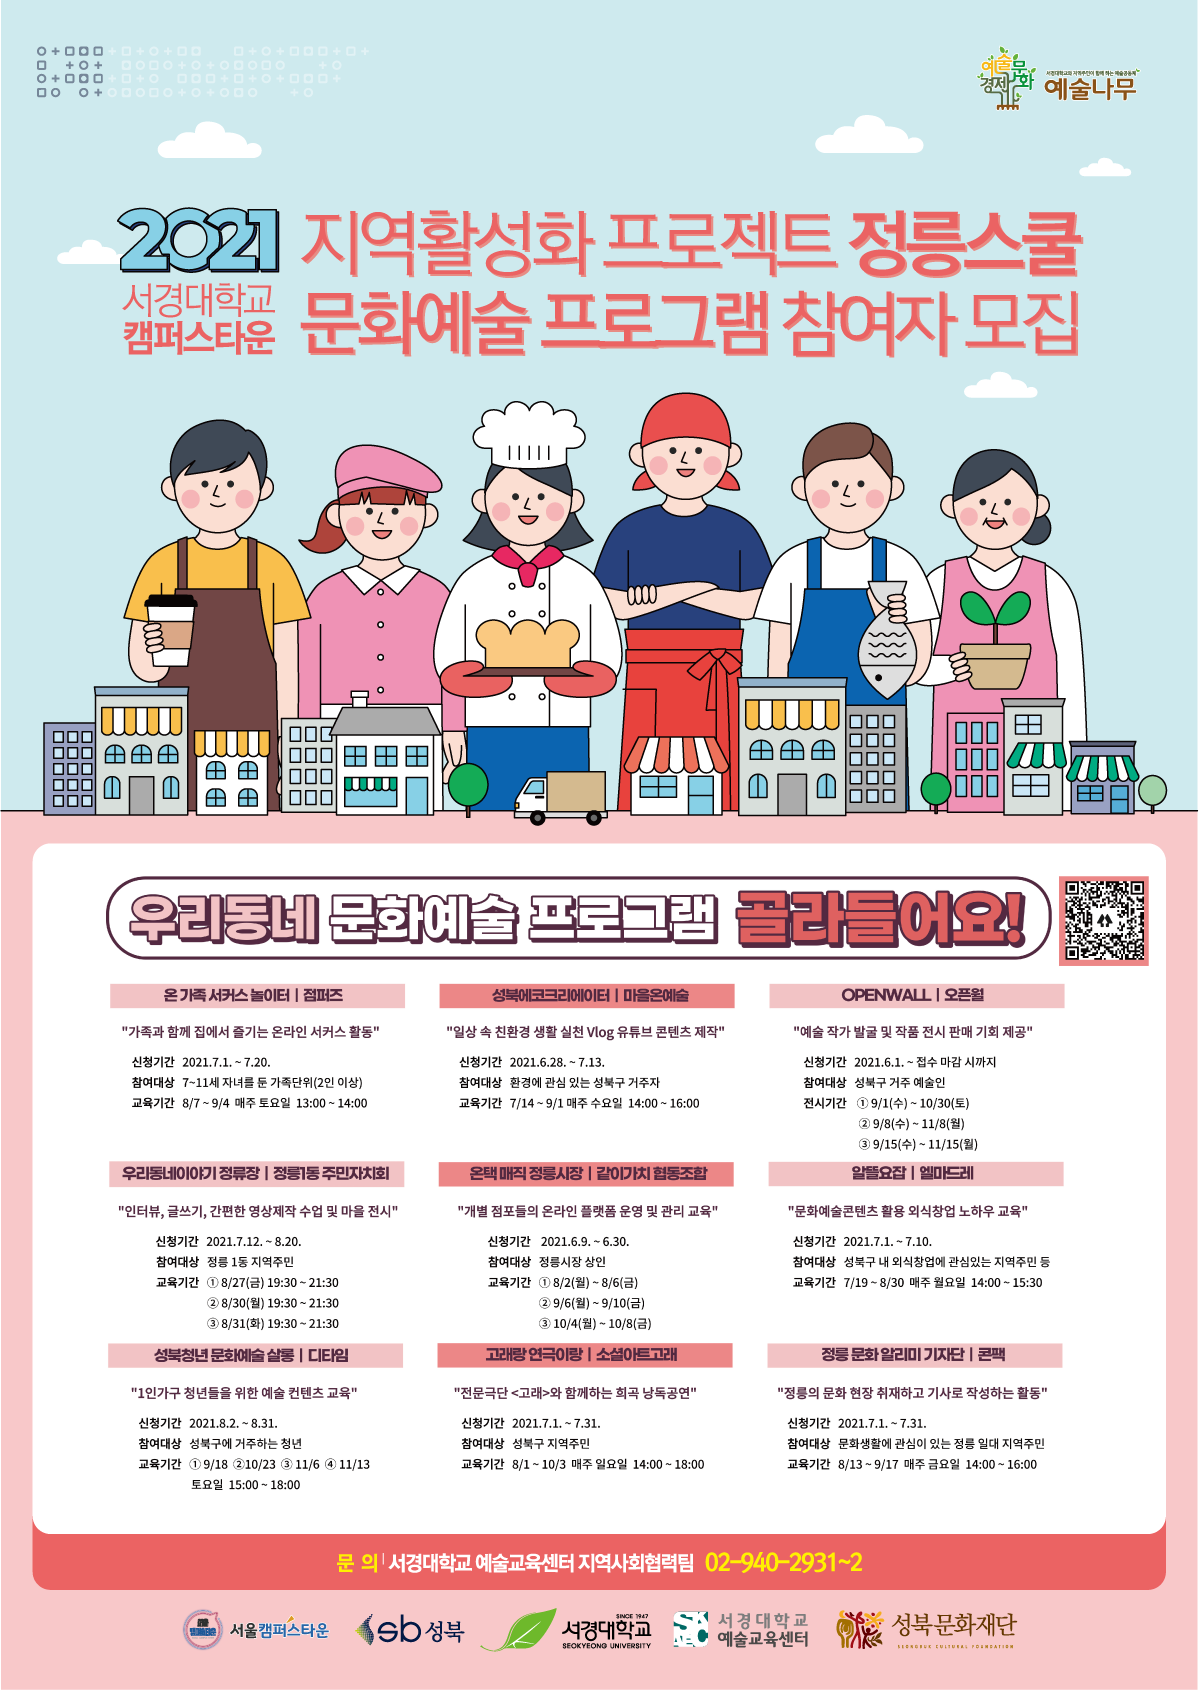 서경대학교 캠퍼스타운 지역활성화 프로젝트 정릉스쿨 문화예술 프로그램 참여자 모집